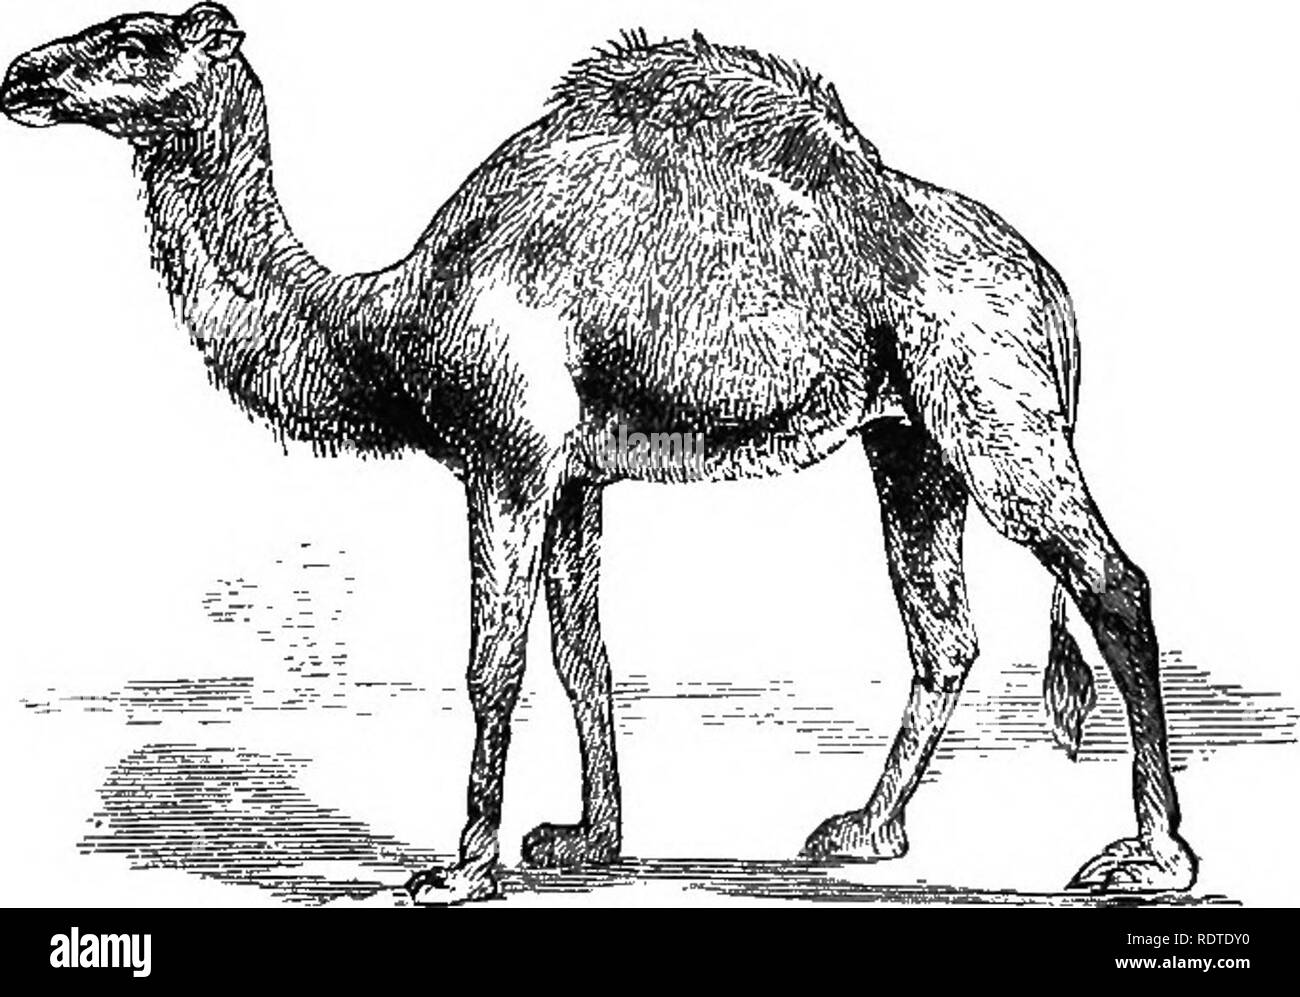 . 14 Wochen in der Zoologie. Zoologie. Wasser-Zellen von Camel's Stymach. Die Familie ist wie folgt aufgelistet: CAMELID/t. Zehen United auf dem Nagel. Zehen getrennt. Eine hdmp; zwei HÖCKERN ich Camelas Camelus dromedarius, bactriaous, D. omedary. Baktrischen Camd. Â ohne Hump; Auchenia llama. Das Dromedar ist eigentümlich zu sterilen Regionen angepasst. Ihren langen Hals, Schneidezähne und Eckzähne in beiden Kiefern, Spezial-zwischensohle, p^g 73 Gaumenspalte Oberlippe, und Schmale Backe - Knochen, damit es seine Nahrung von dornigen Sträuchern durch die Art und Weise zu beschneiden - Seite ohne retard-ing seine Geschwindigkeit; seine haarigen Nüstern, die sich intuitiv, schützen Sie es Stockfoto